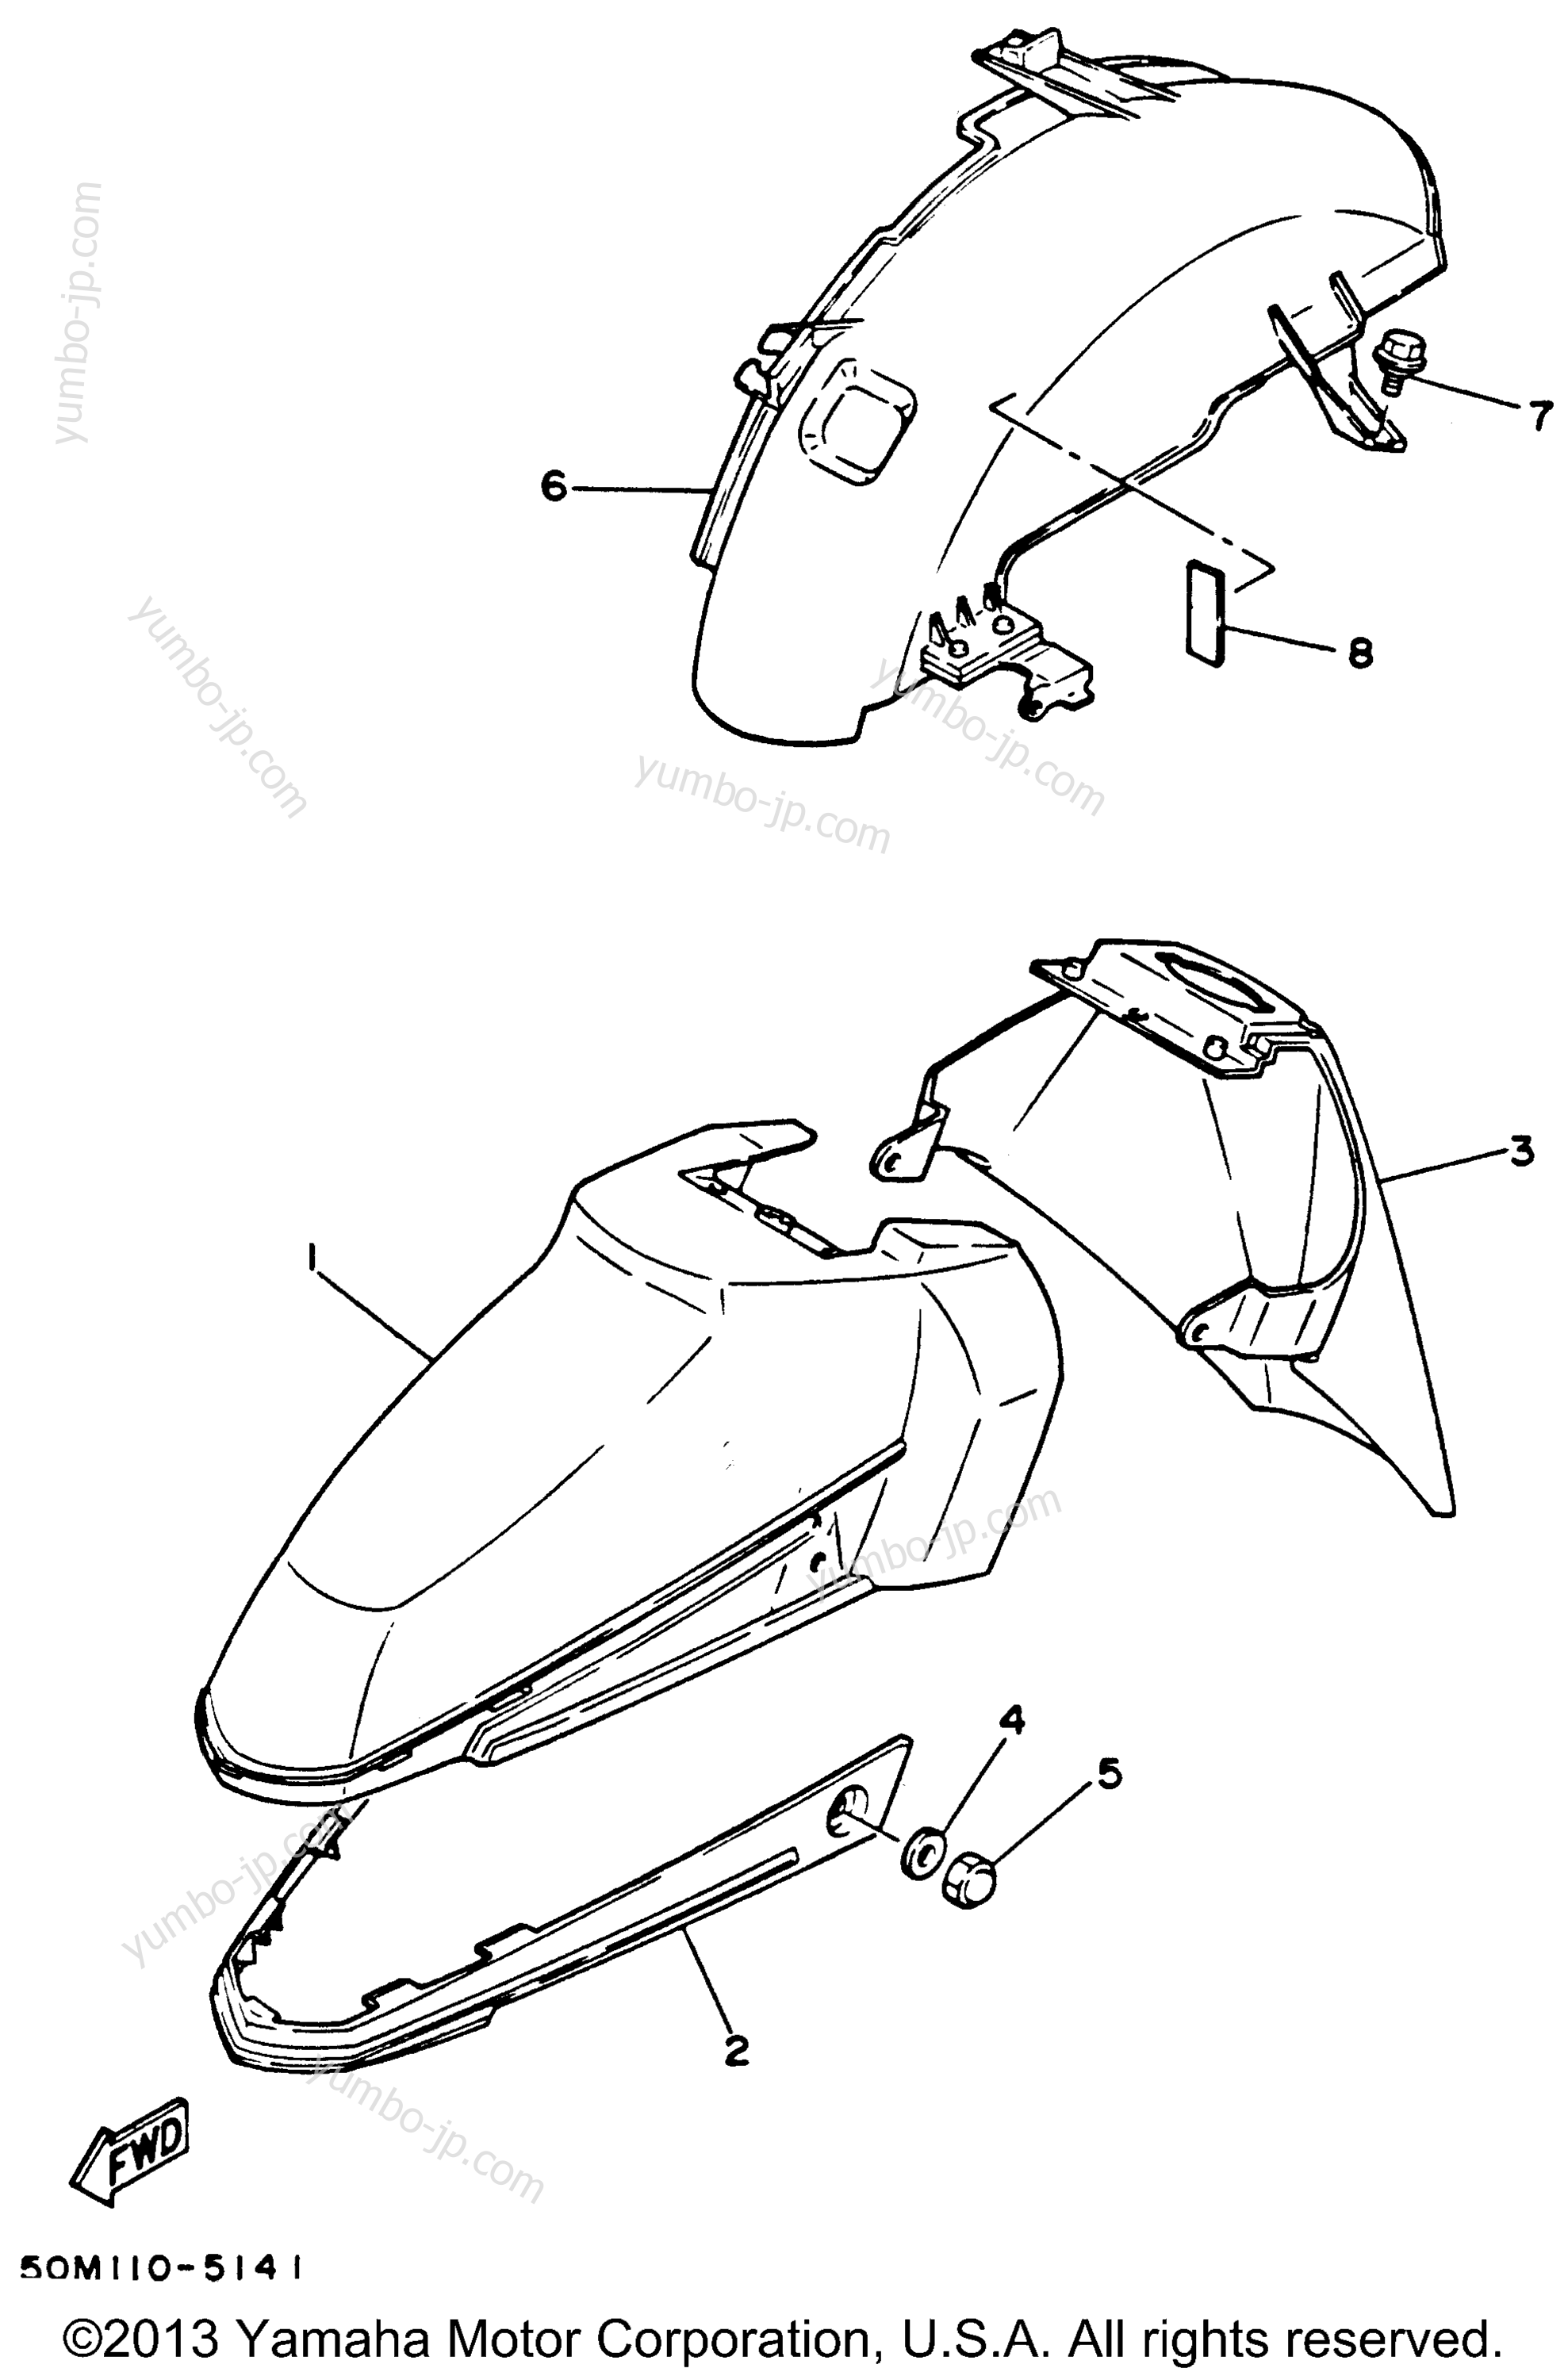 FENDER для скутеров YAMAHA RIVA 125 (XC125L) 1999 г.